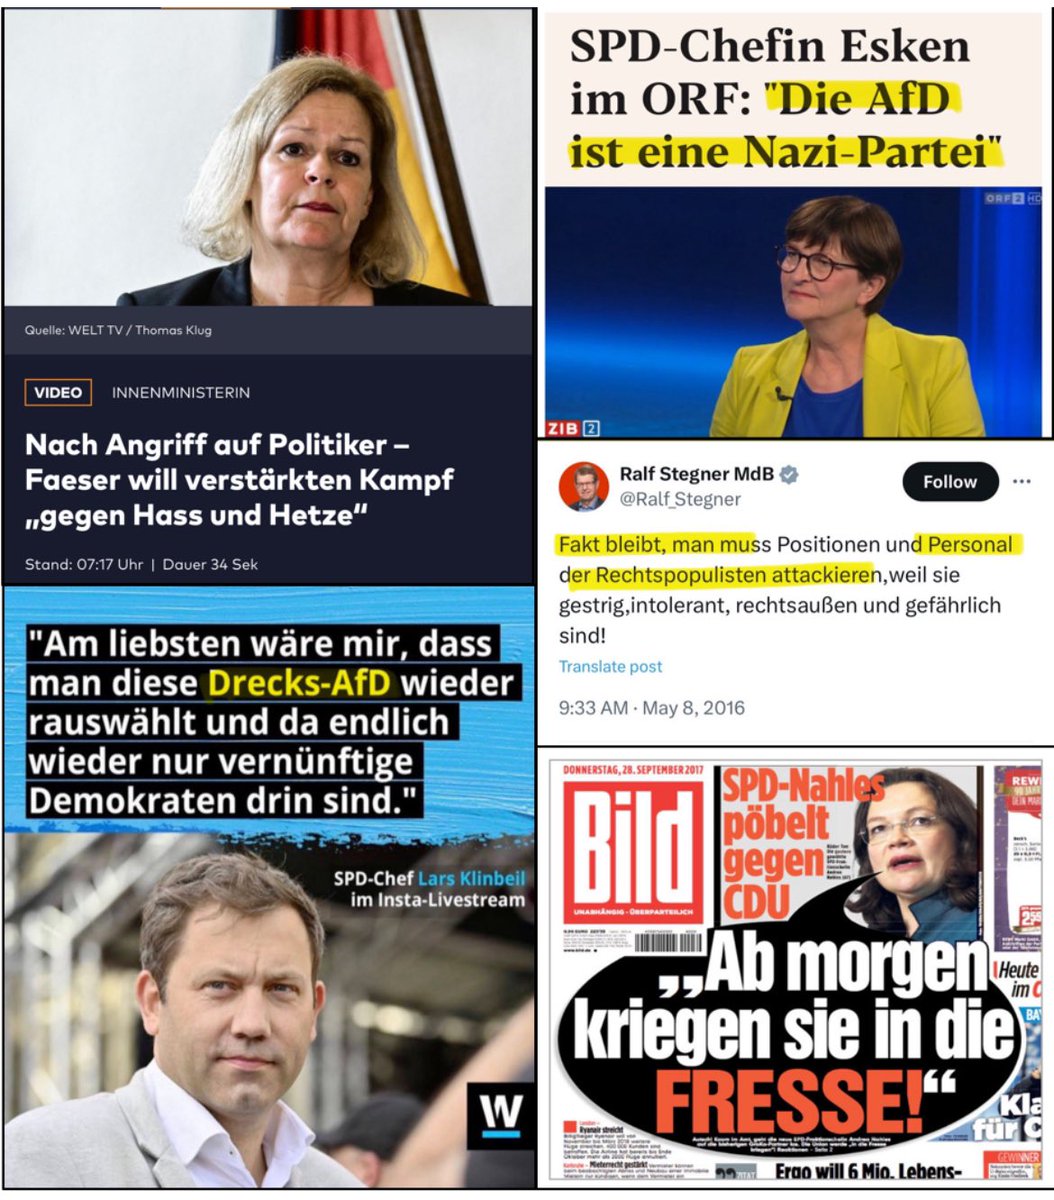 Faeser will jetzt verstärkt den Kampf gegen „Hass und Hetze“ führen.

Dann sollte sie am besten mit ihrer eigenen Partei beginnen.

Da gibt es sehr viel zu tun, angefangen bei der SPD-Parteiführung.